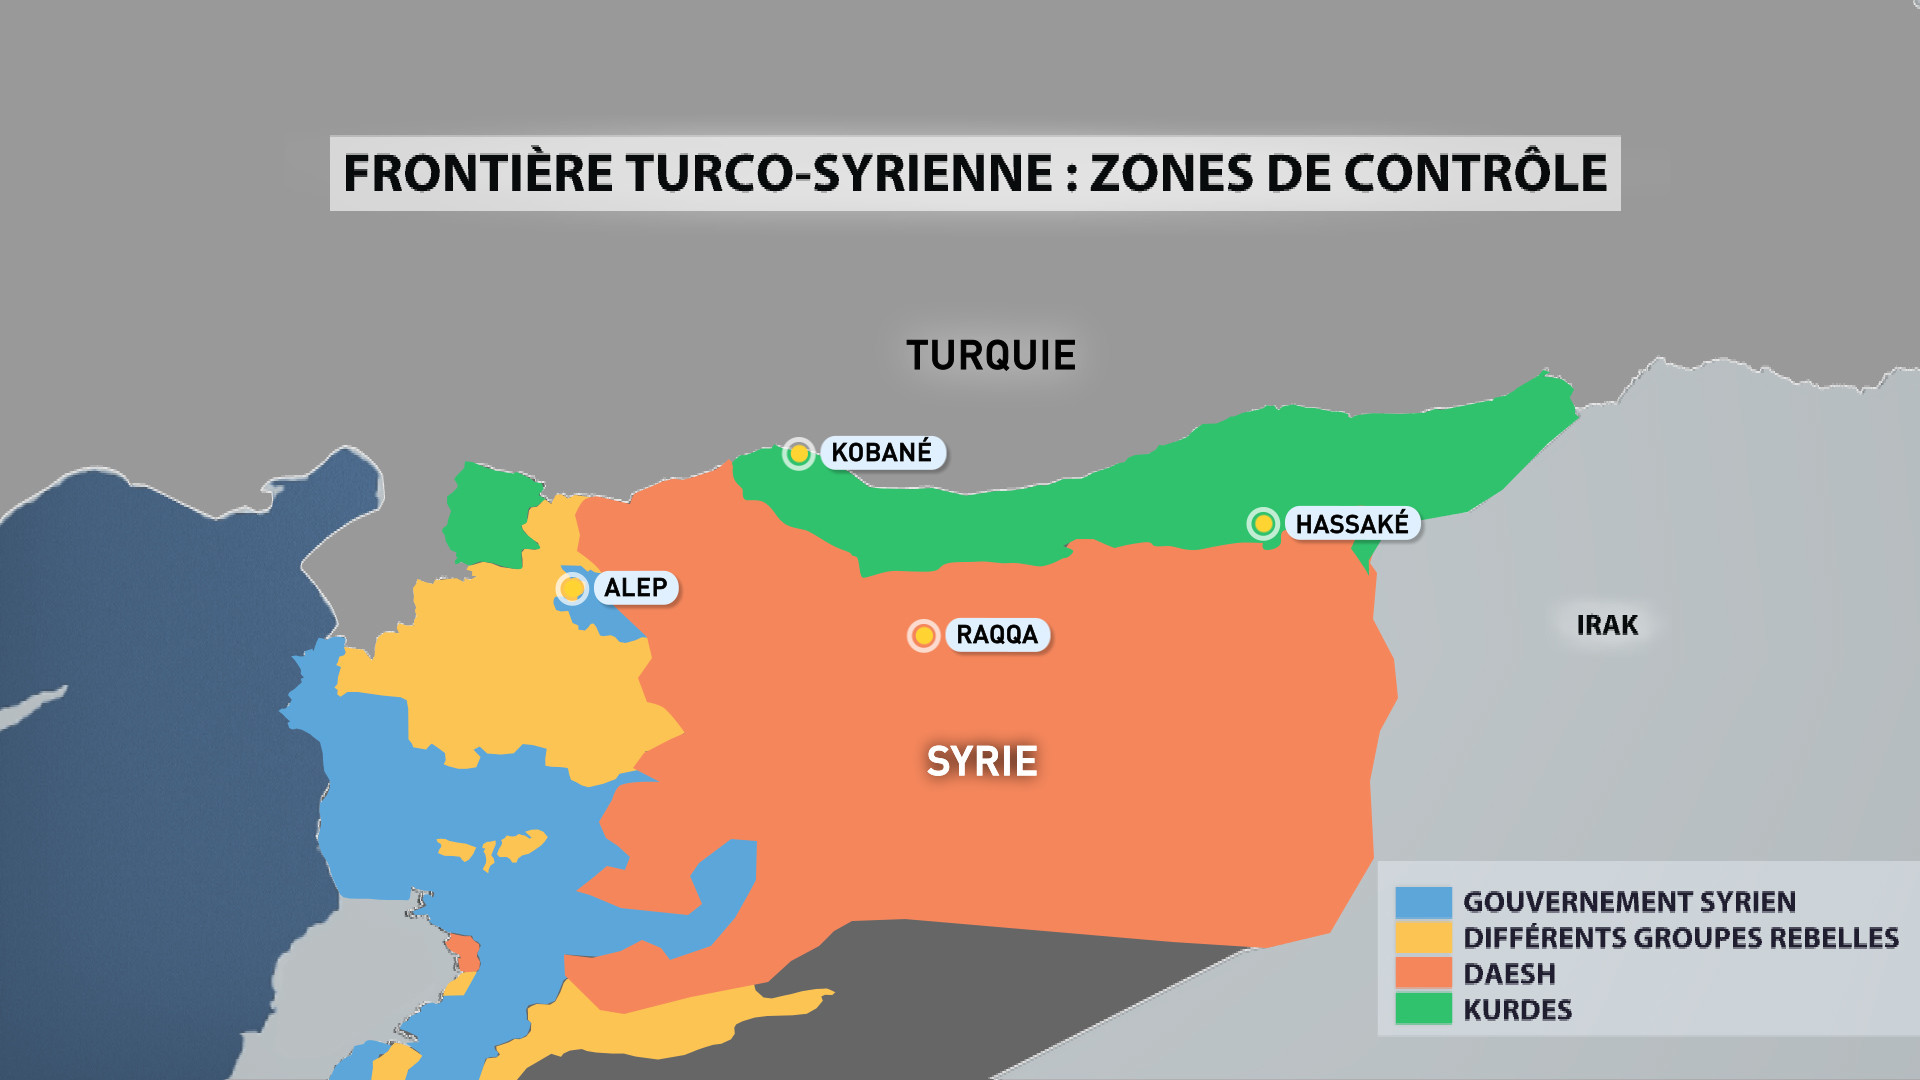 Etat des lieux à la frontière turco-syrienne